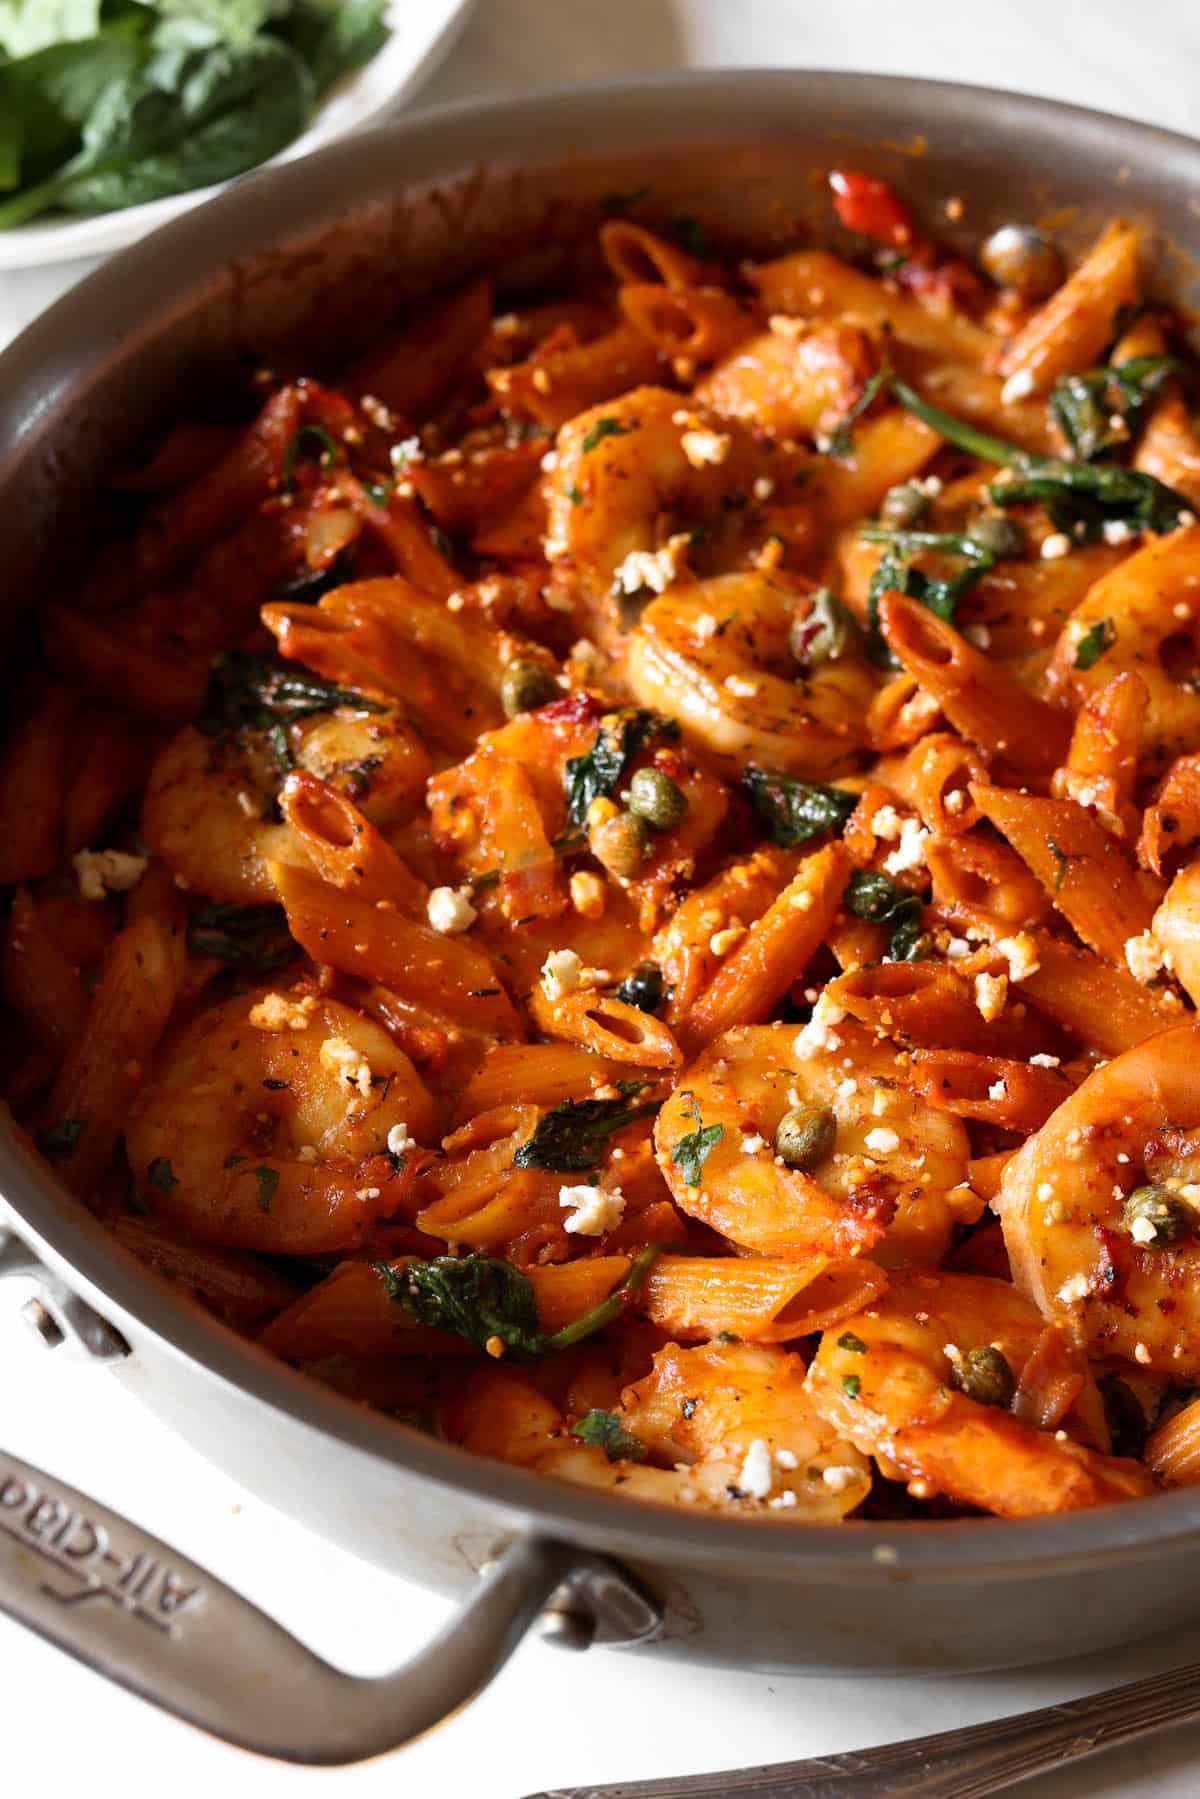 Shrimp and pancetta pasta